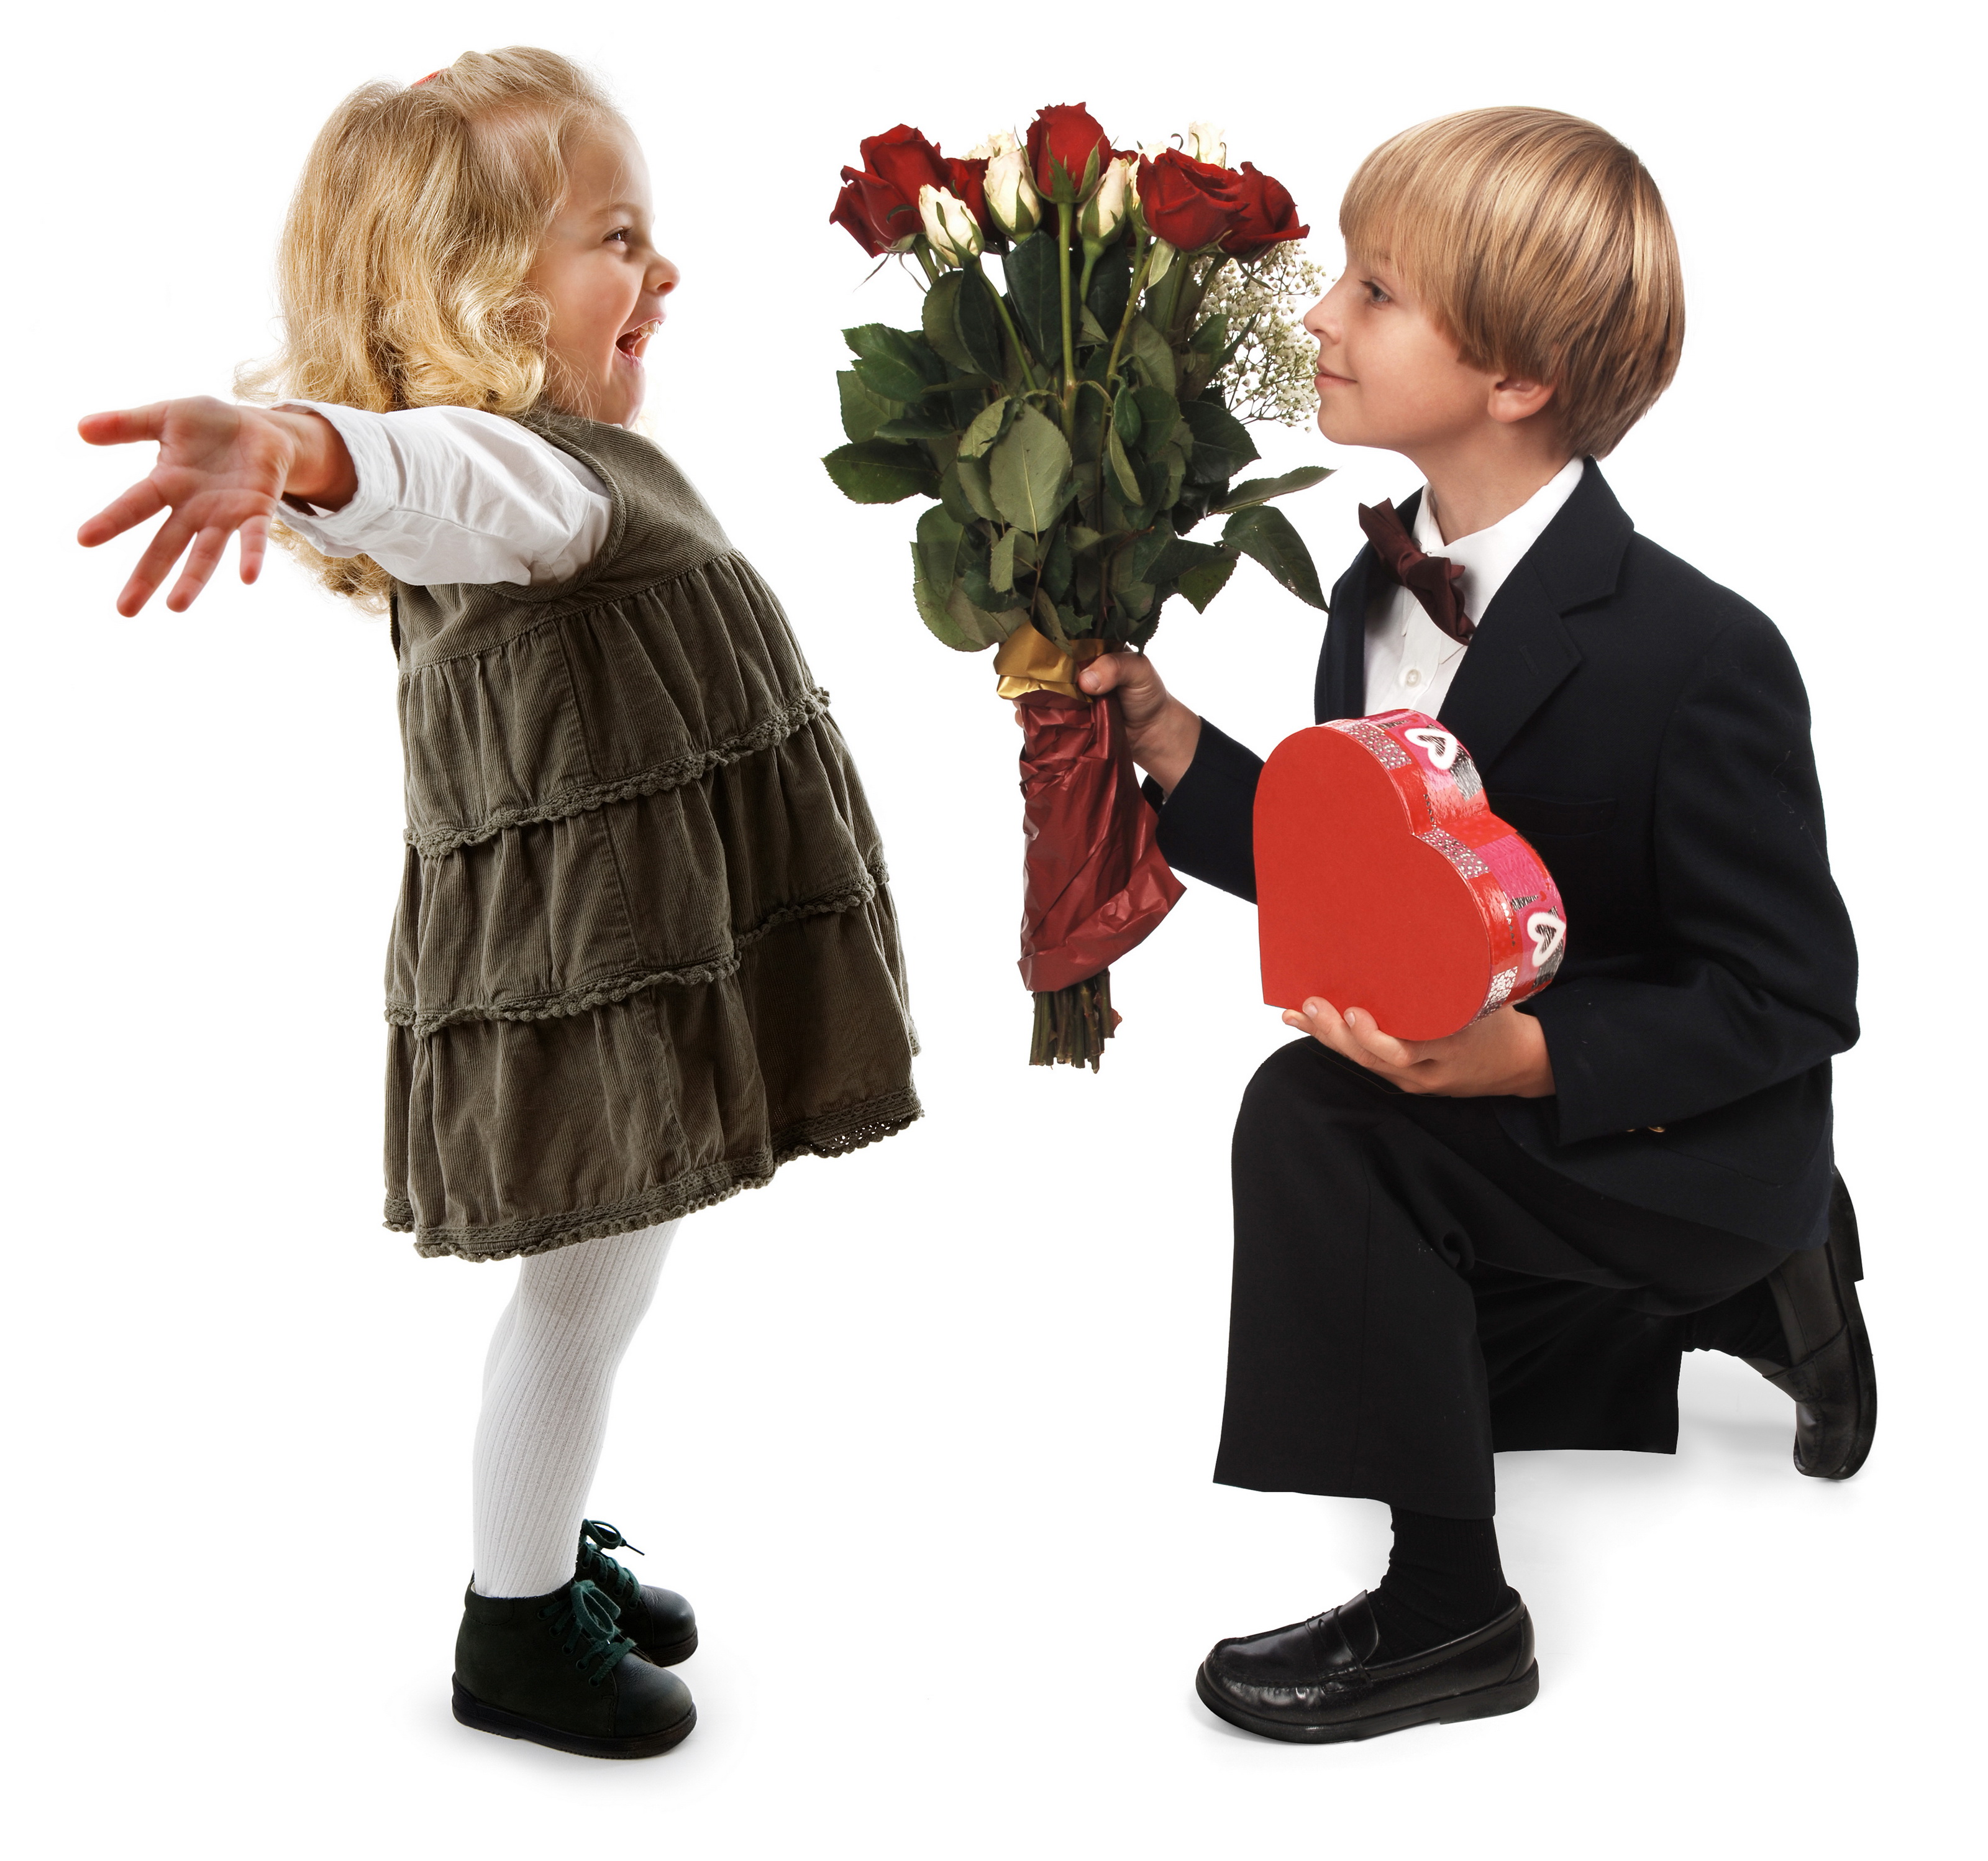 На улице дарят цветы. Мальчик дарит девочке цветы. Мальчик Дари девочке цветы. Мальчик с цветами. Цвета для мальчиков.